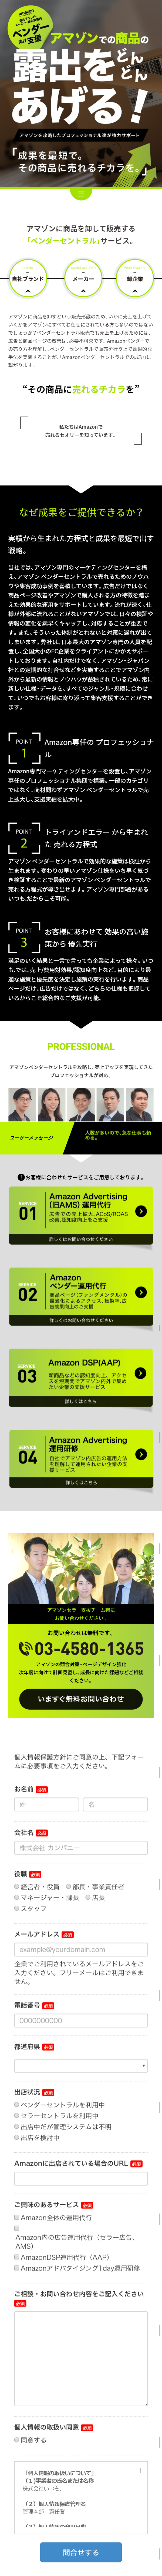 Amazon(アマゾン)ベンダーセントラル支援サービス_sp_1